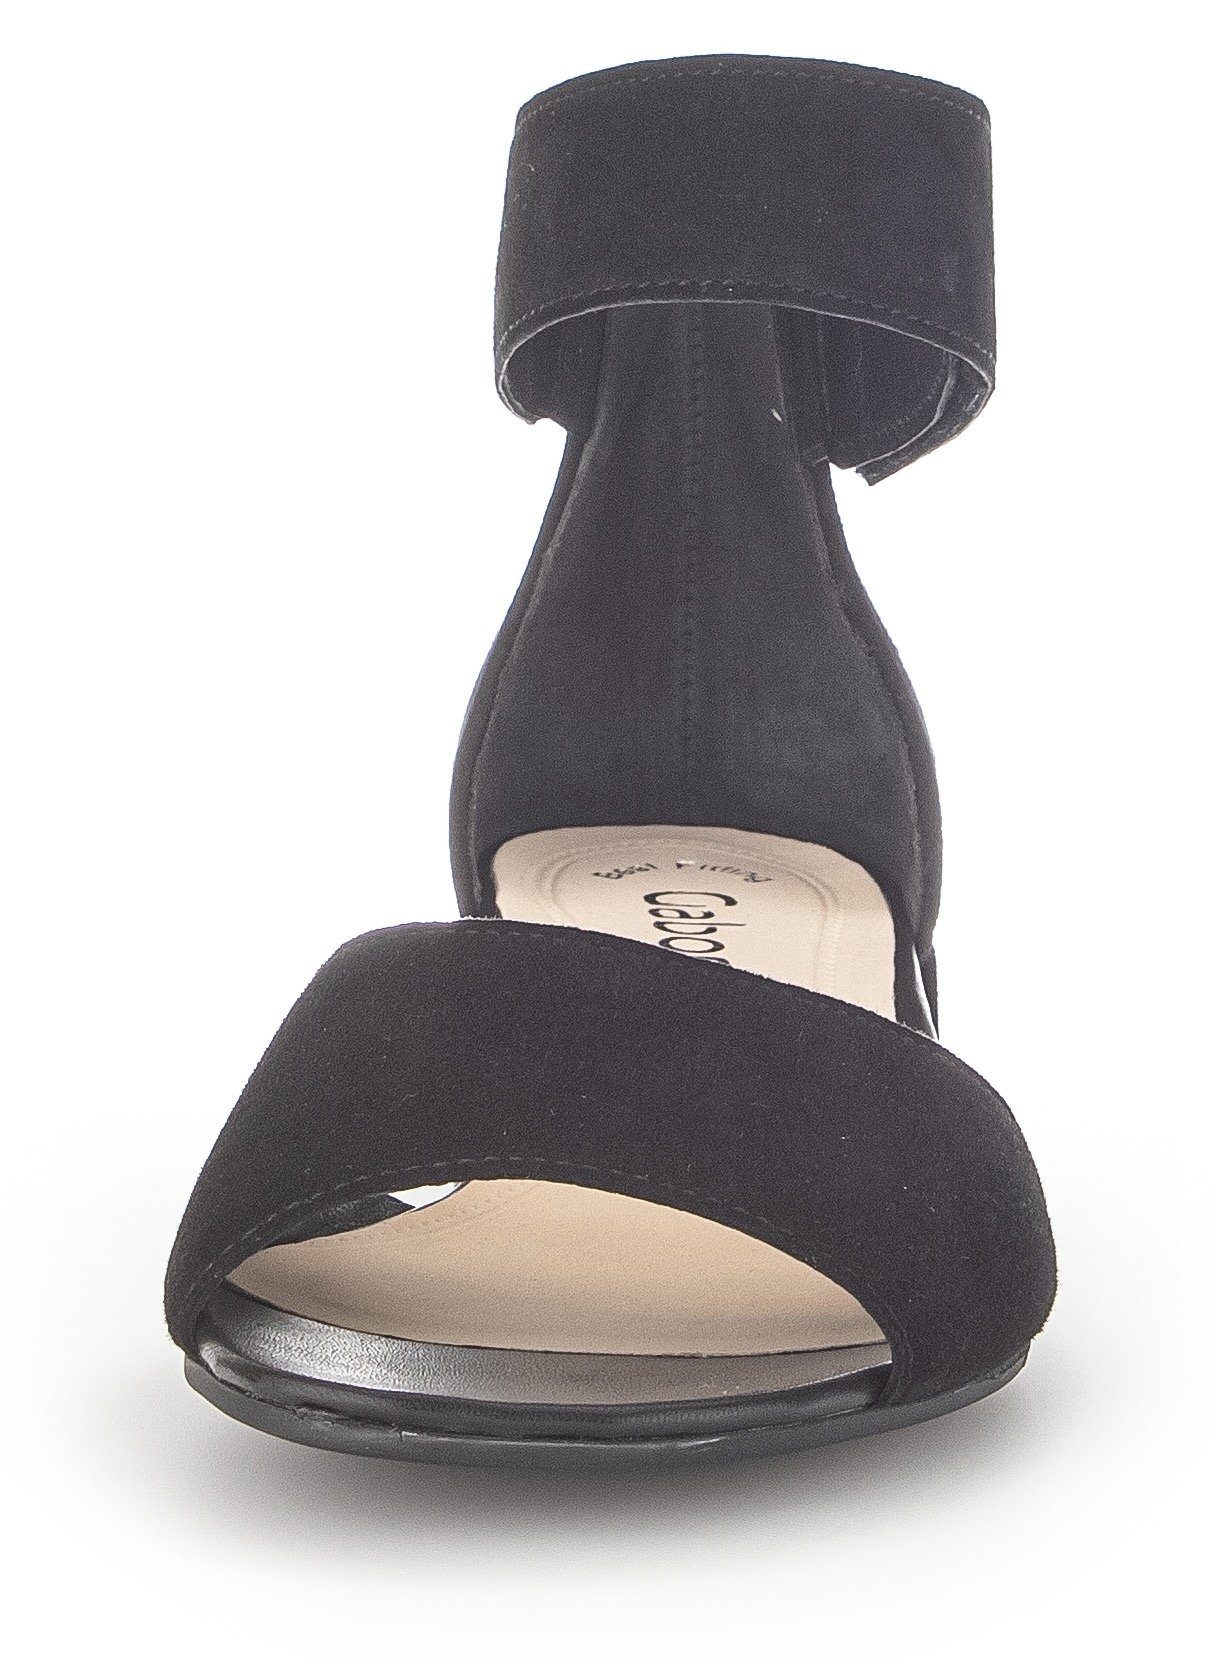 Klettverschluss Gabor mit schwarz regulierbarem Sandalette